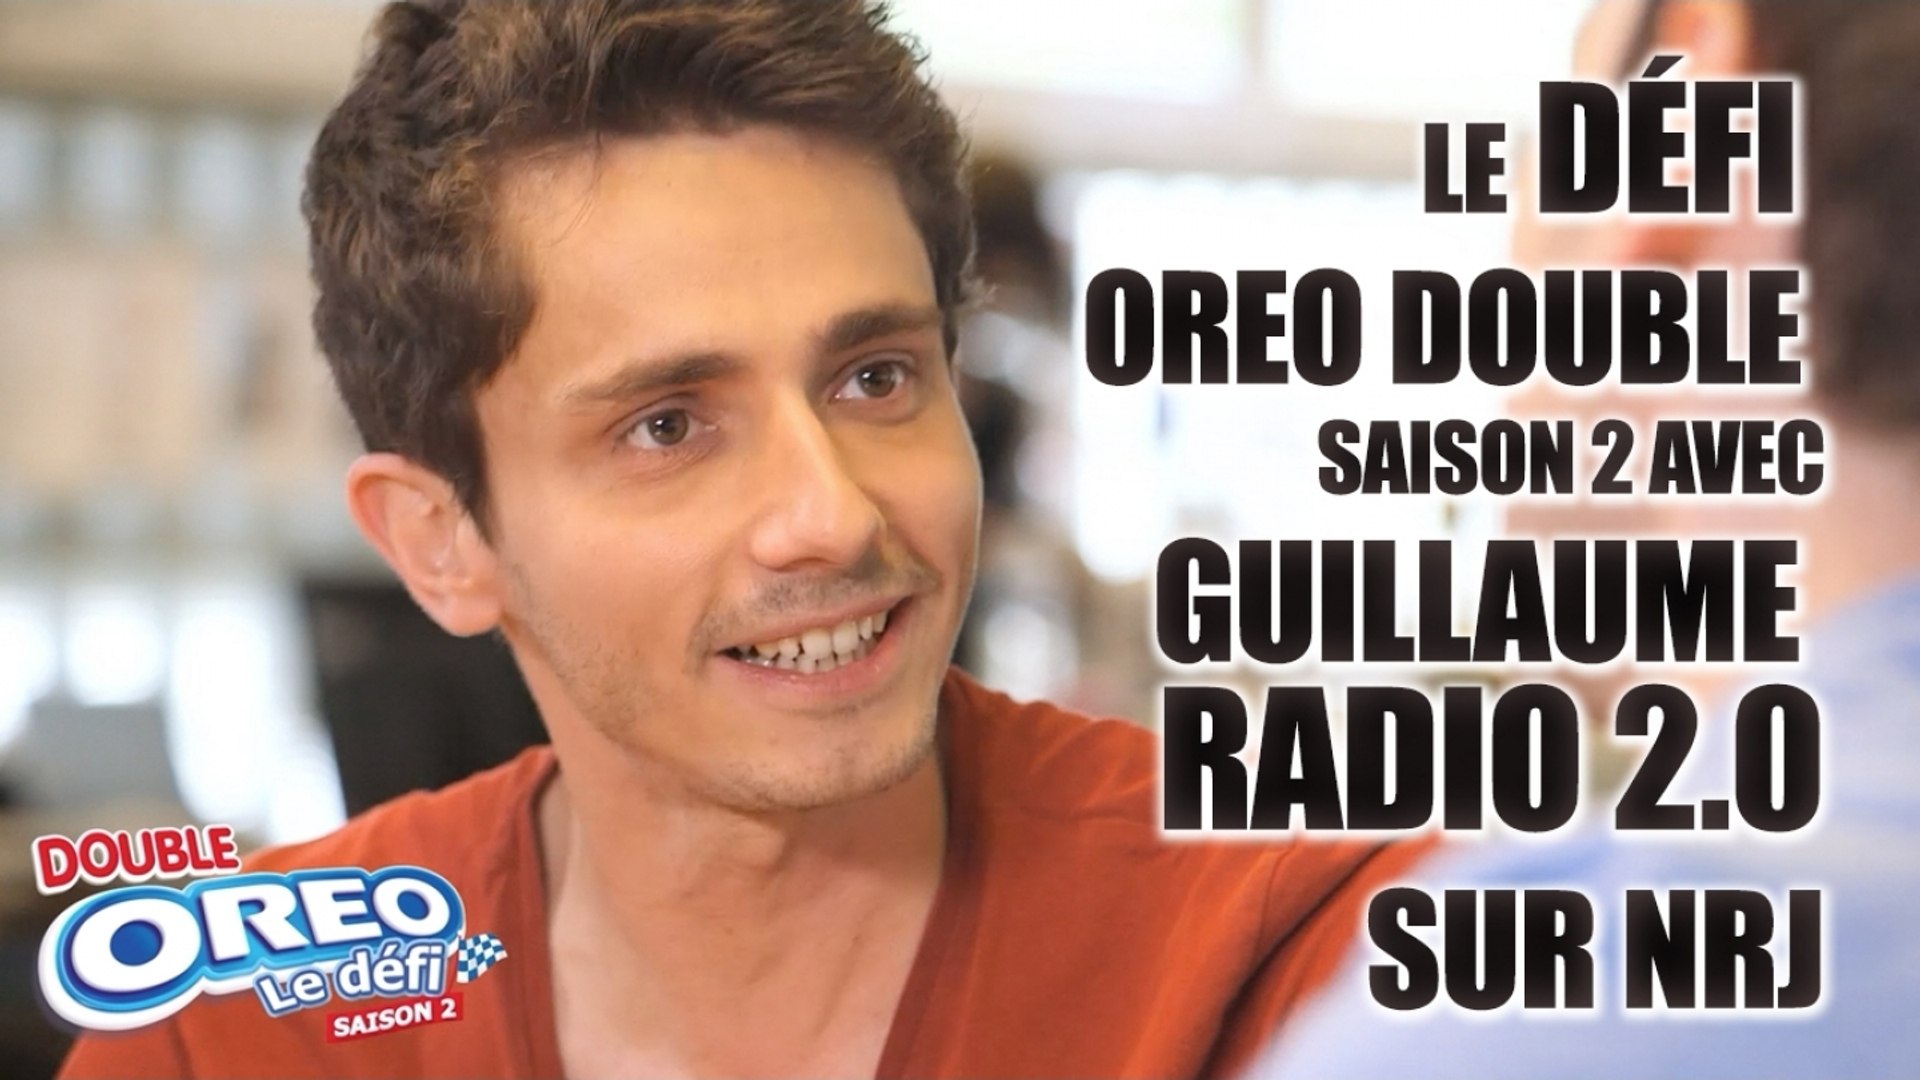 Le défi Oreo Double Saison 2 avec Guillaume Radio 2.0 sur NRJ - Vidéo  Dailymotion